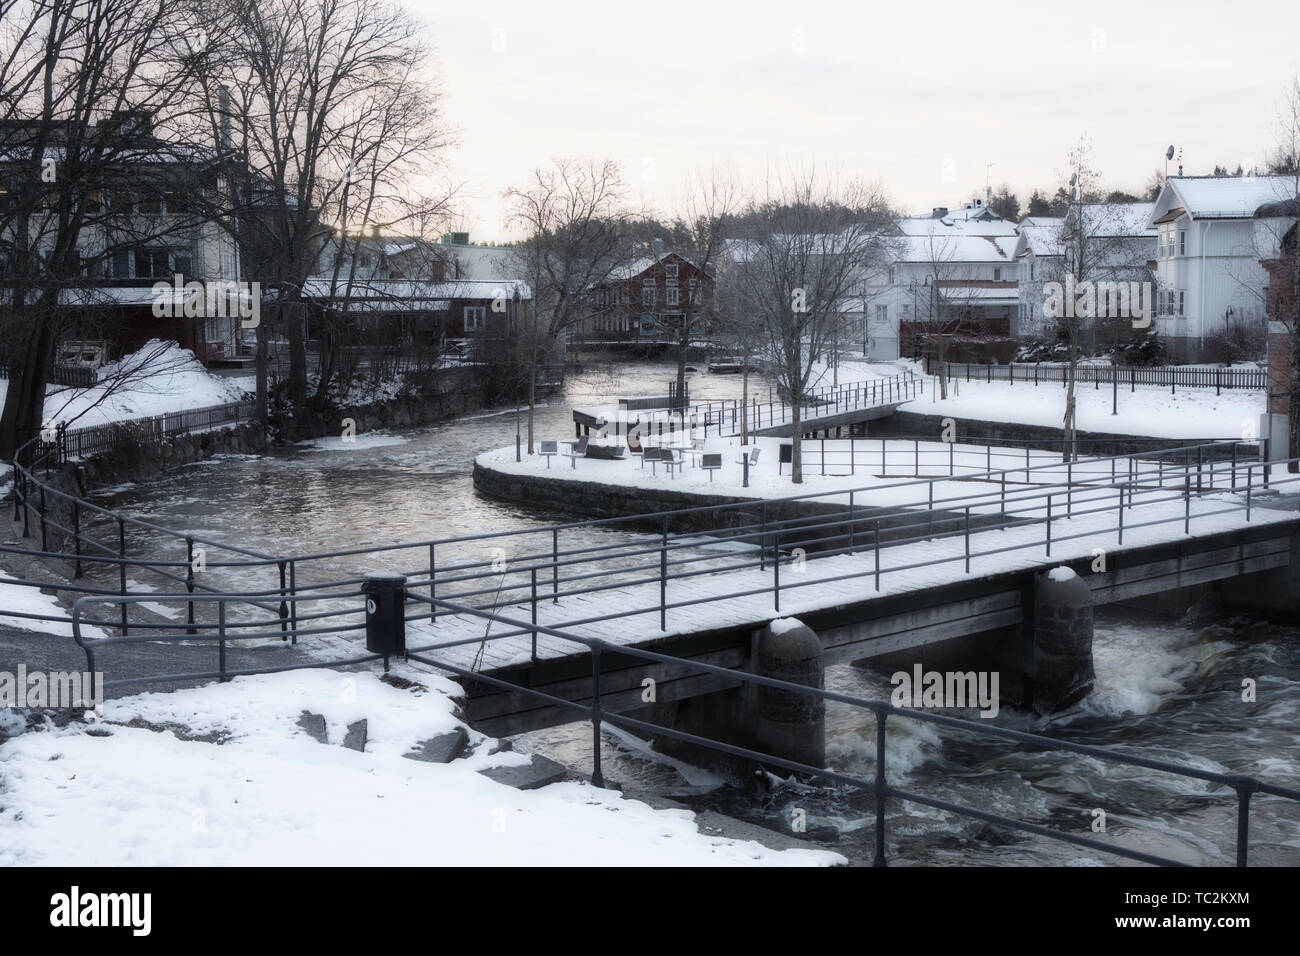 Scène d'hiver par la rivière Norrtalje (Norrtaljean) Norrtalje, comté de Stockholm, Suède, Scandinavie Banque D'Images